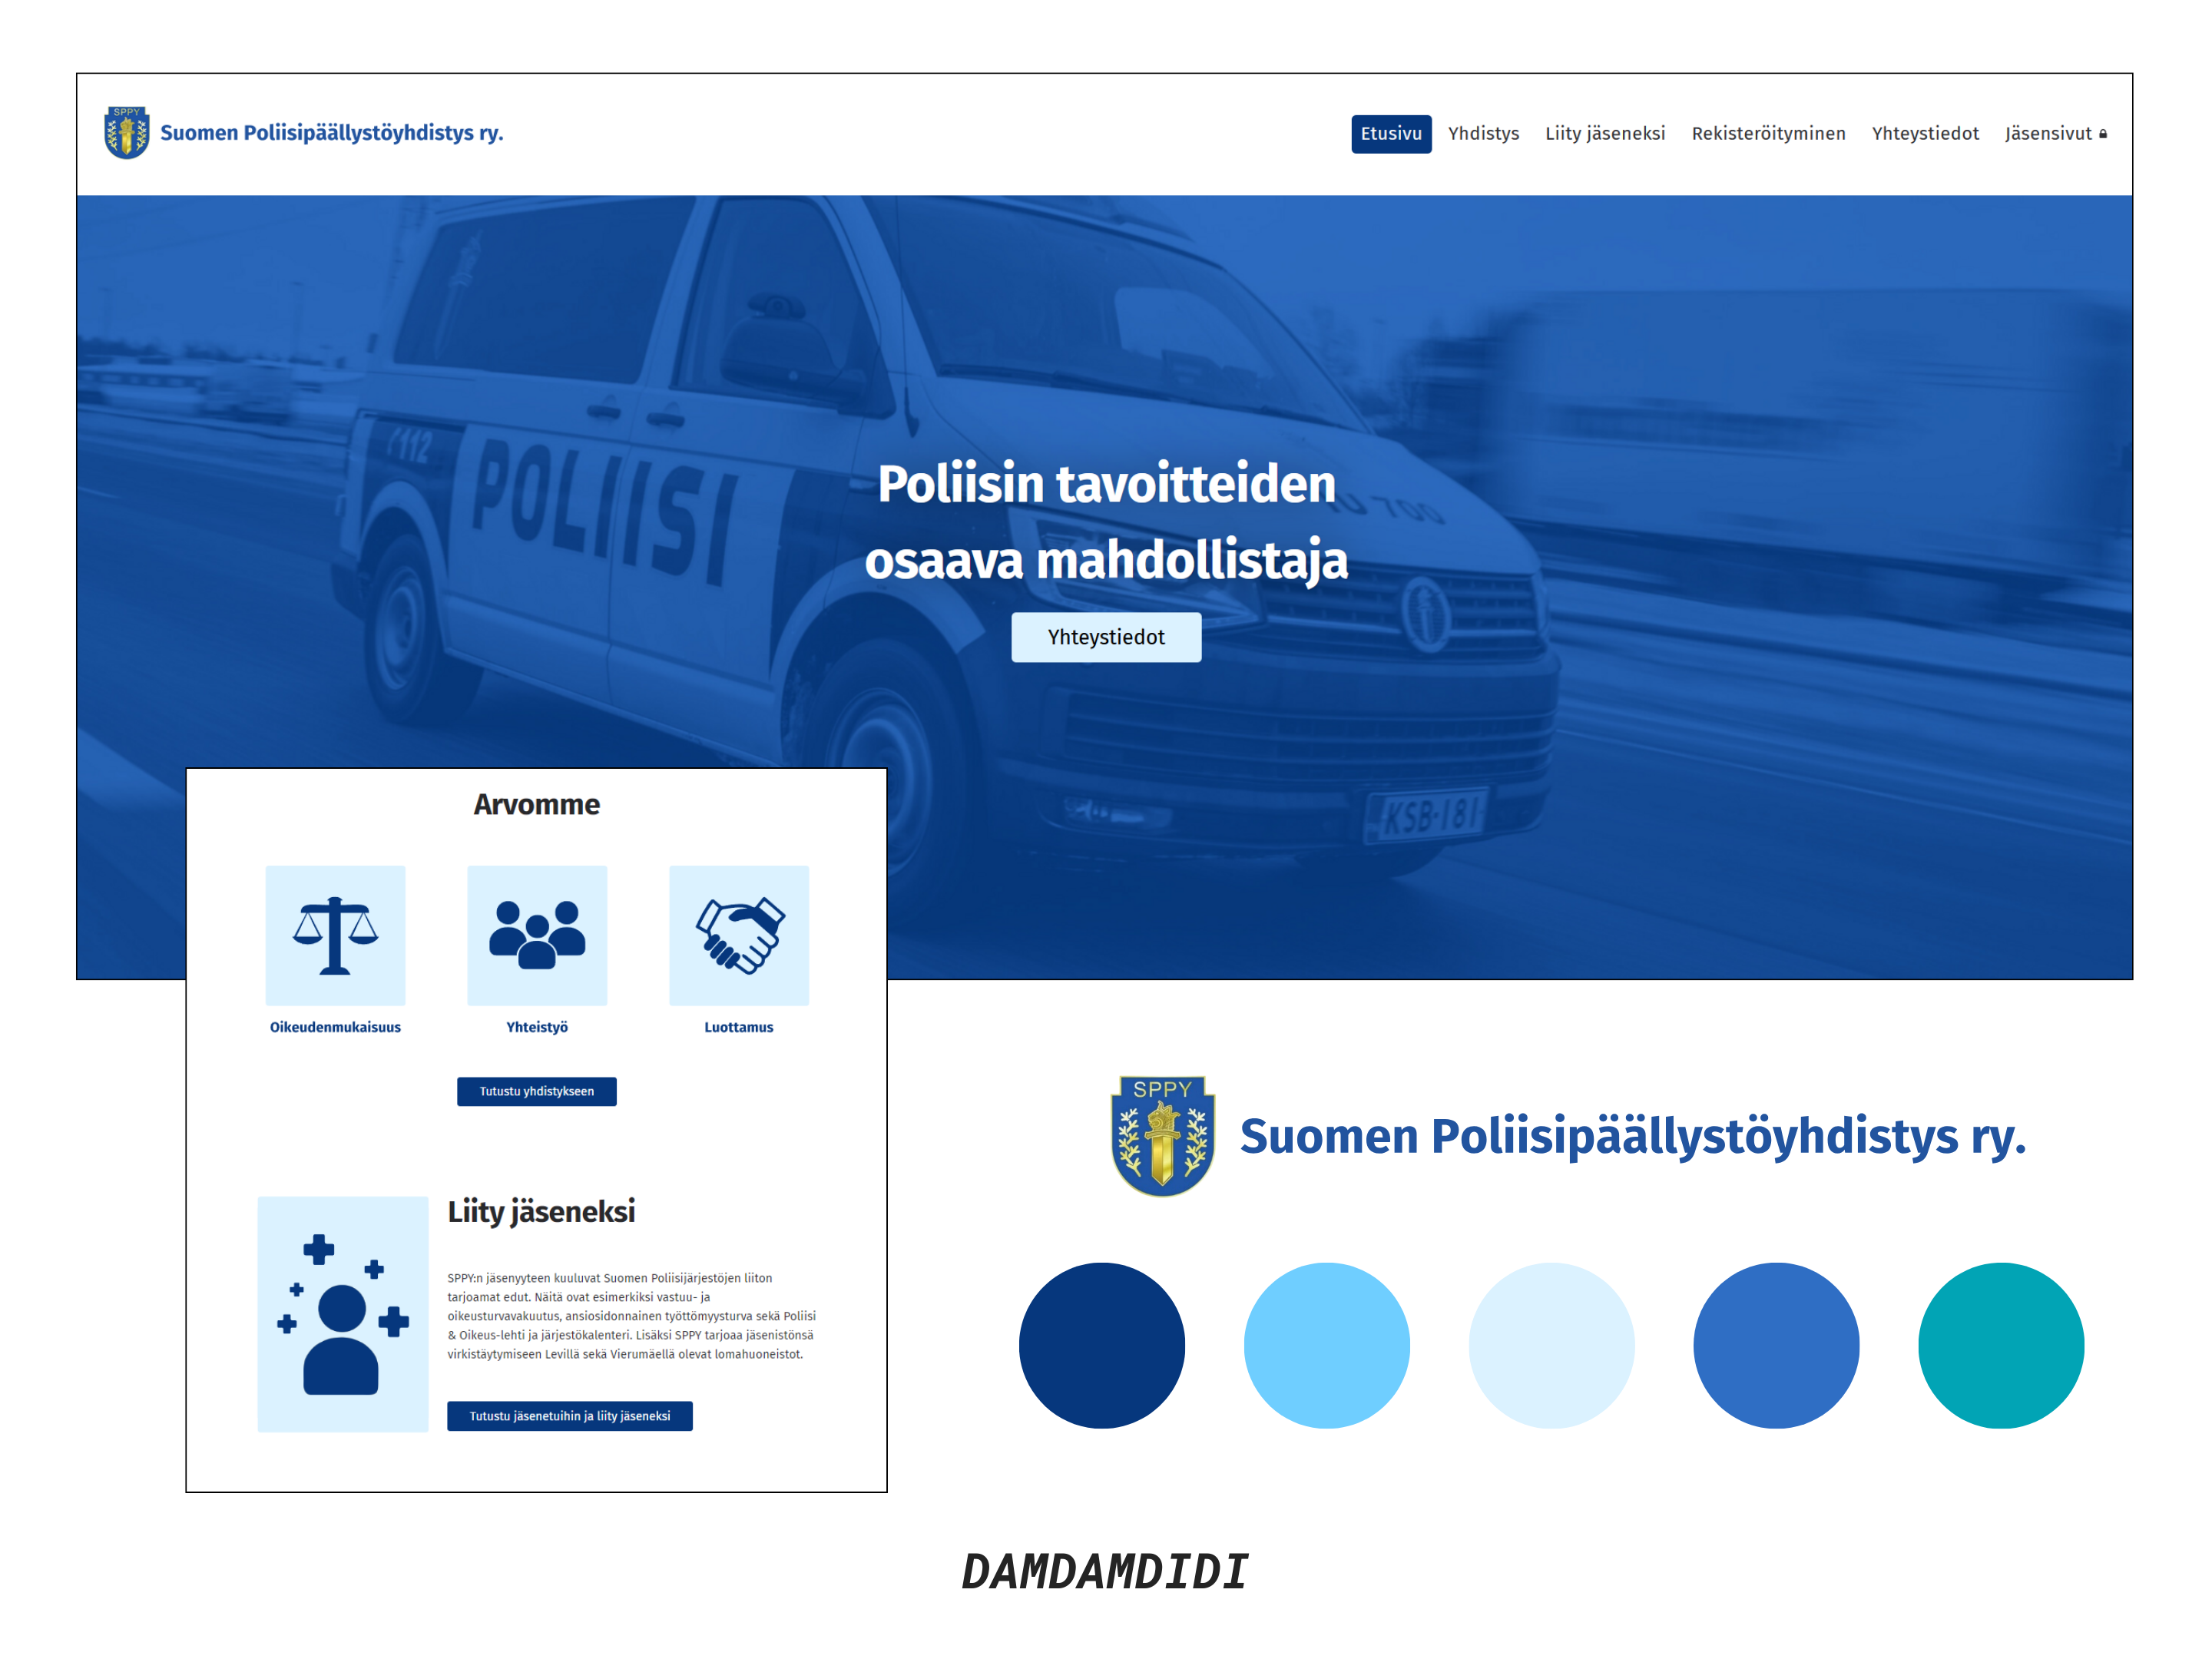 Kuvakaappauksia Suomen Poliisipäällystöyhdistyksen verkkosivuista, yhdistyksen logo sekä värimaailmaa kuvattuna väripalloina.